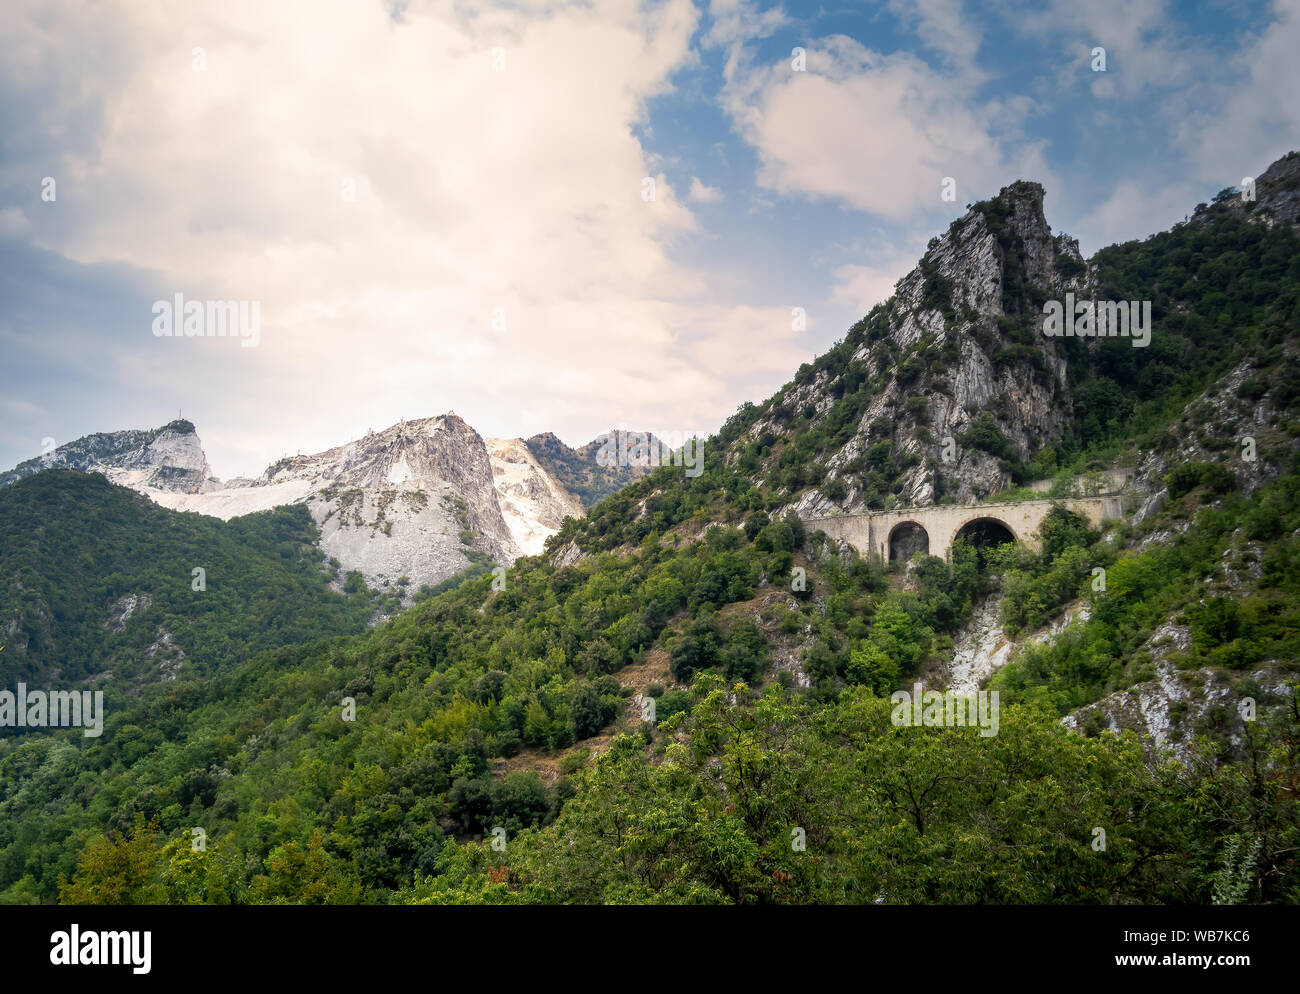 Vista di approccio per le cave di marmo delle Alpi Apuane, montagne vicino a Carrara, Italia. Famosa per il marmo bianco ma anche popolare con i turisti. Foto Stock